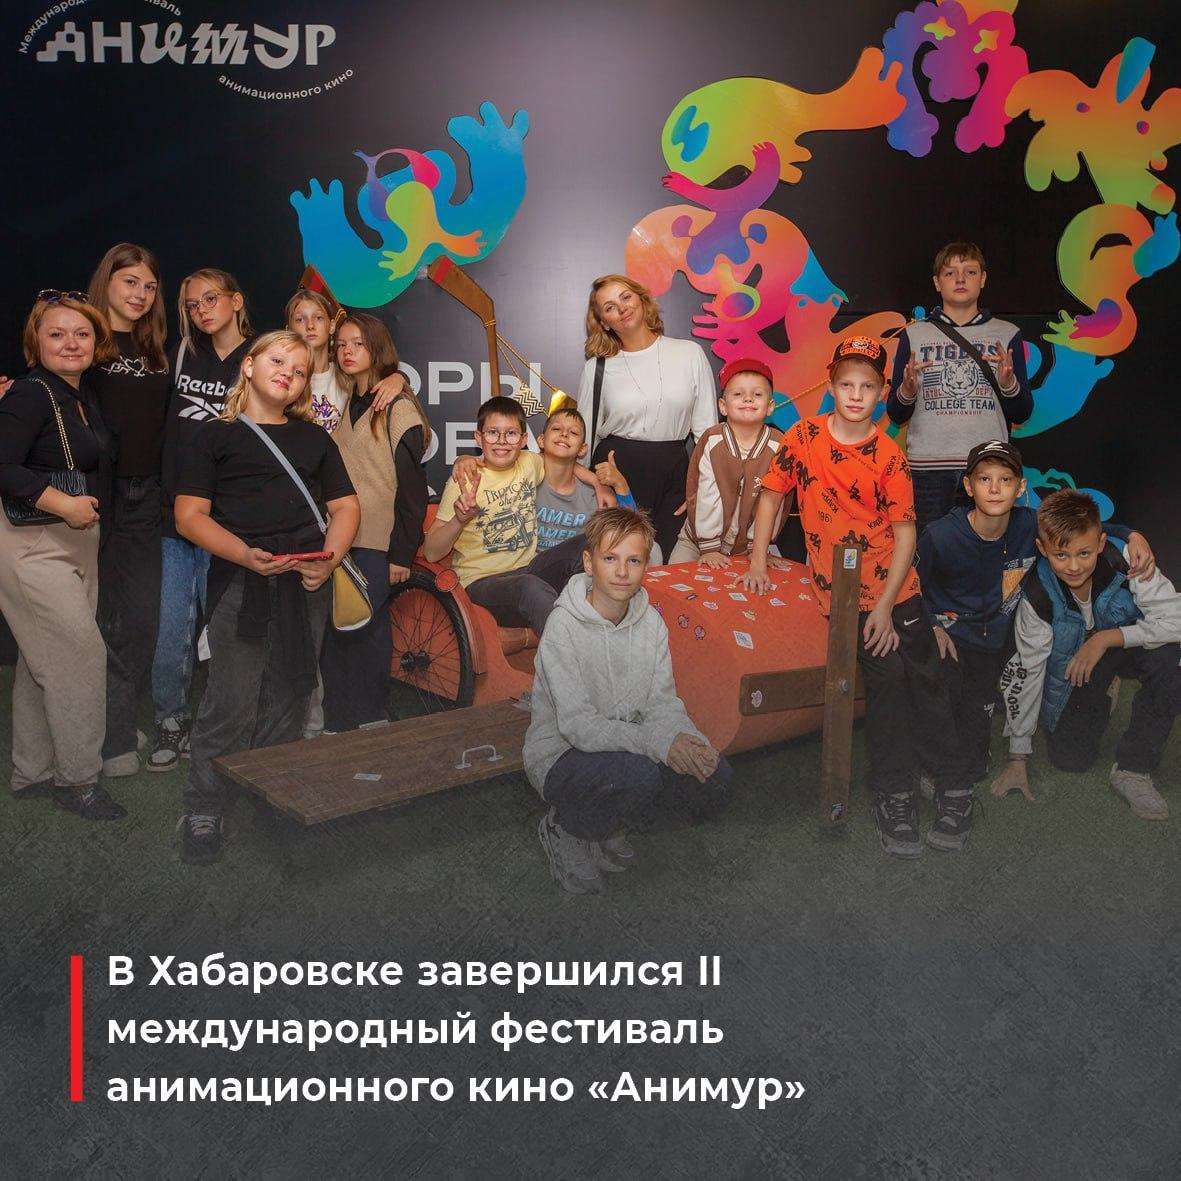 Завершился II Международный фестиваль анимационного кино «Анимур»